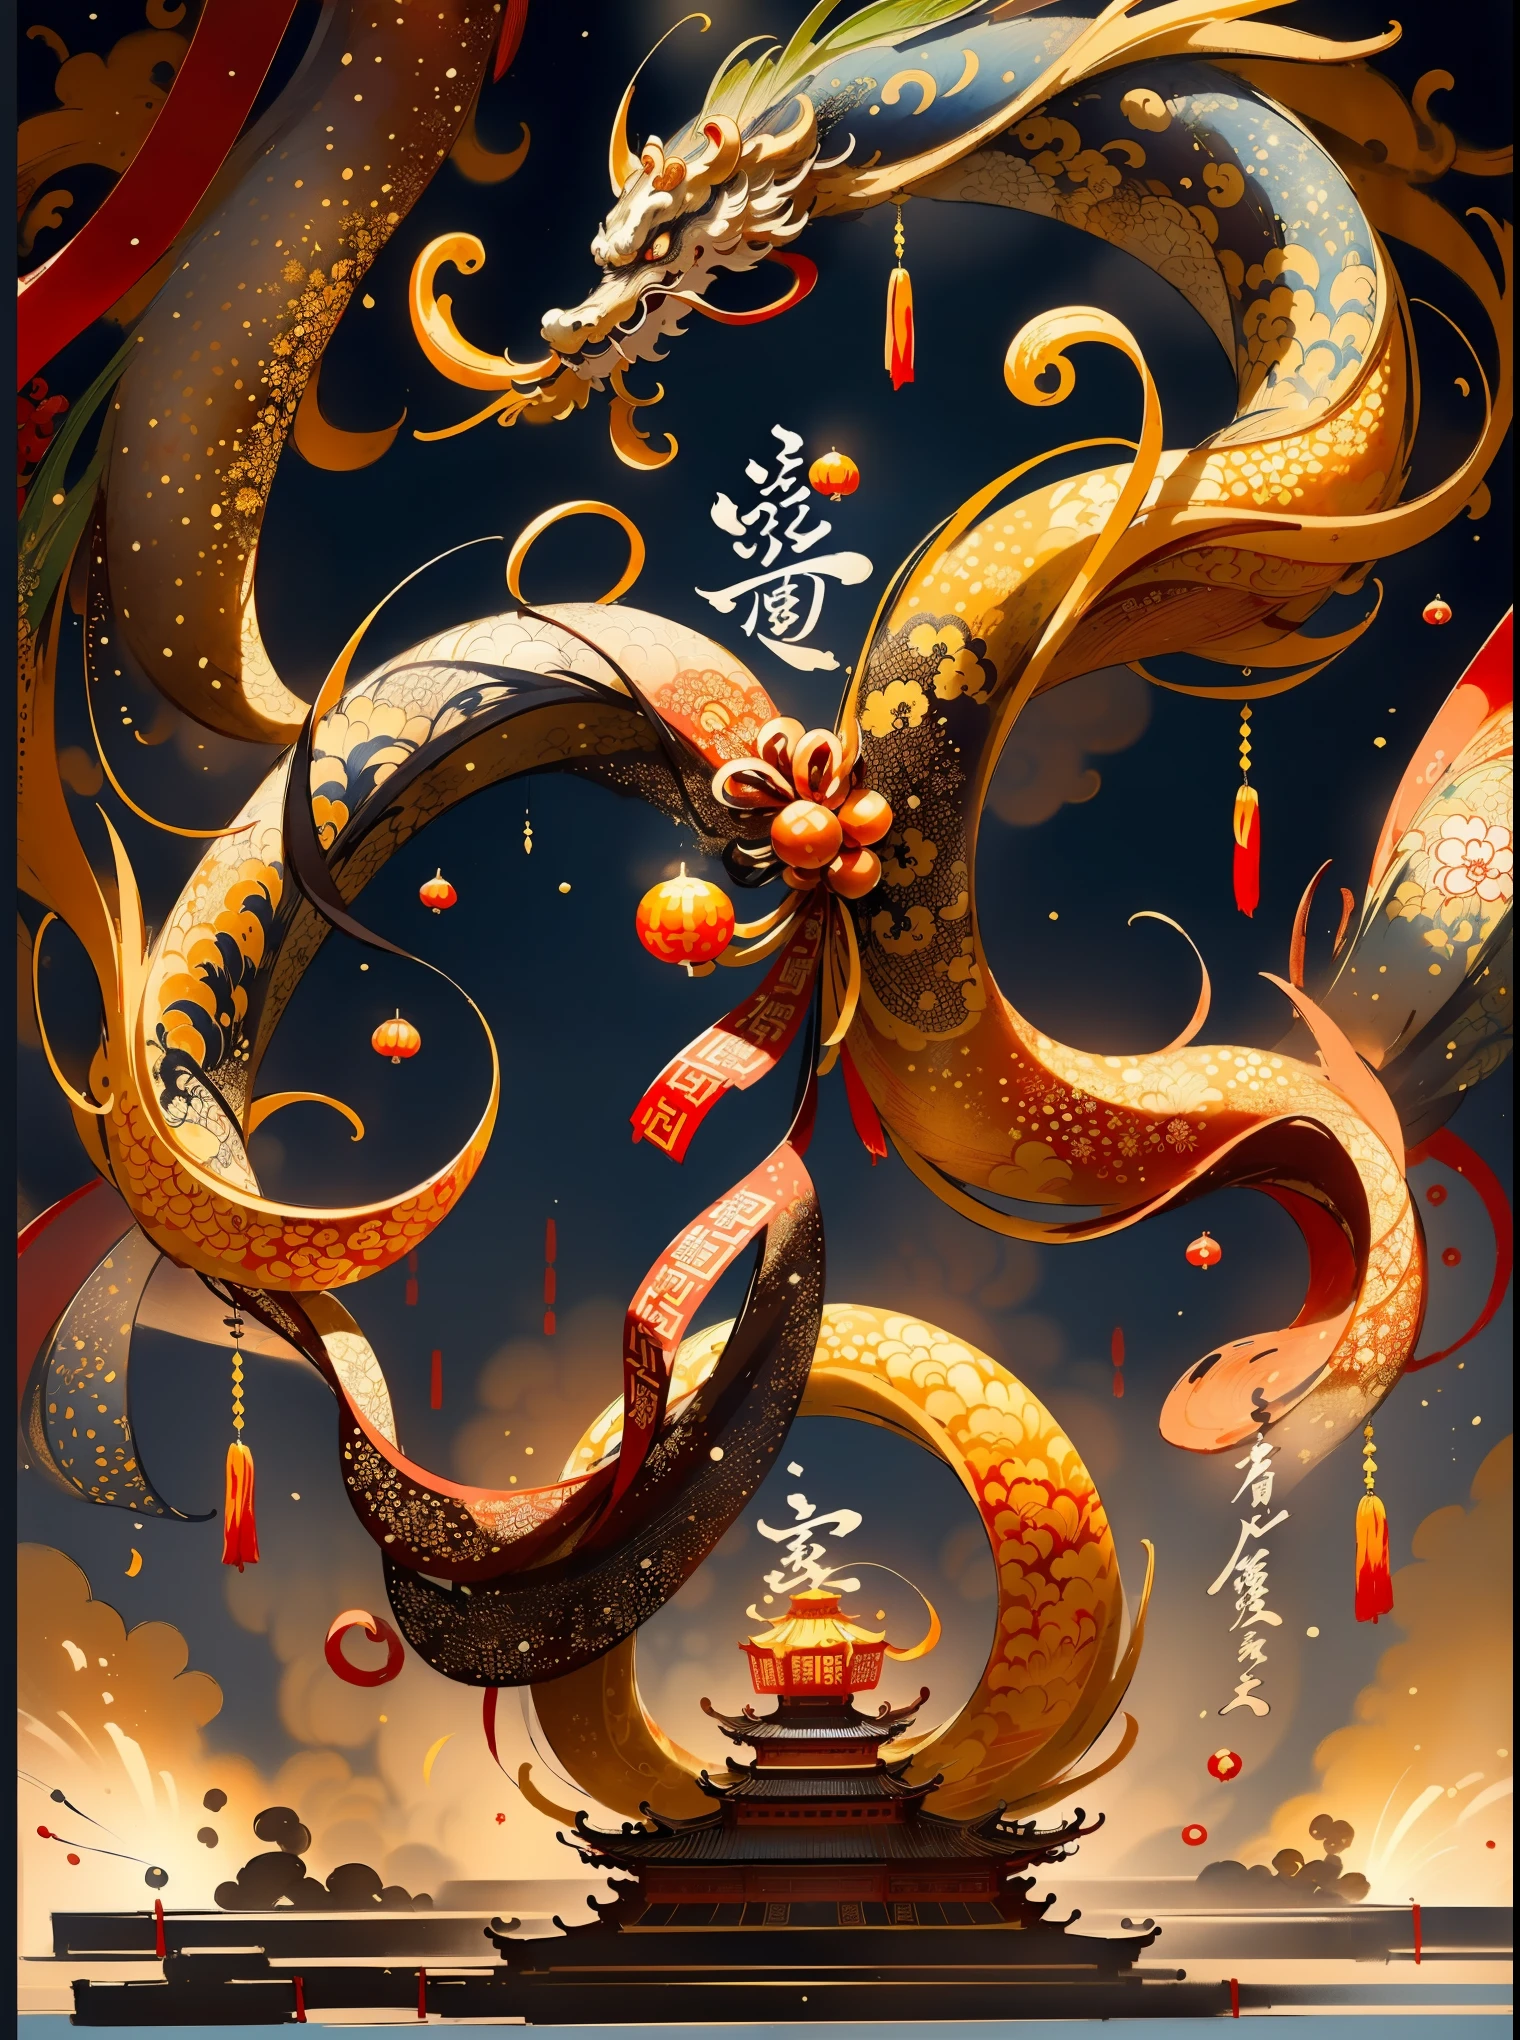 ((最好的质量)), ((高分辨率)), Song dynasty ink painting style, celebration of the New Year, fireworks, dynamic lines ，lively patterns，ancient wisdom, symbolic inscriptions or patterns，traditional Chinese New Year celebration